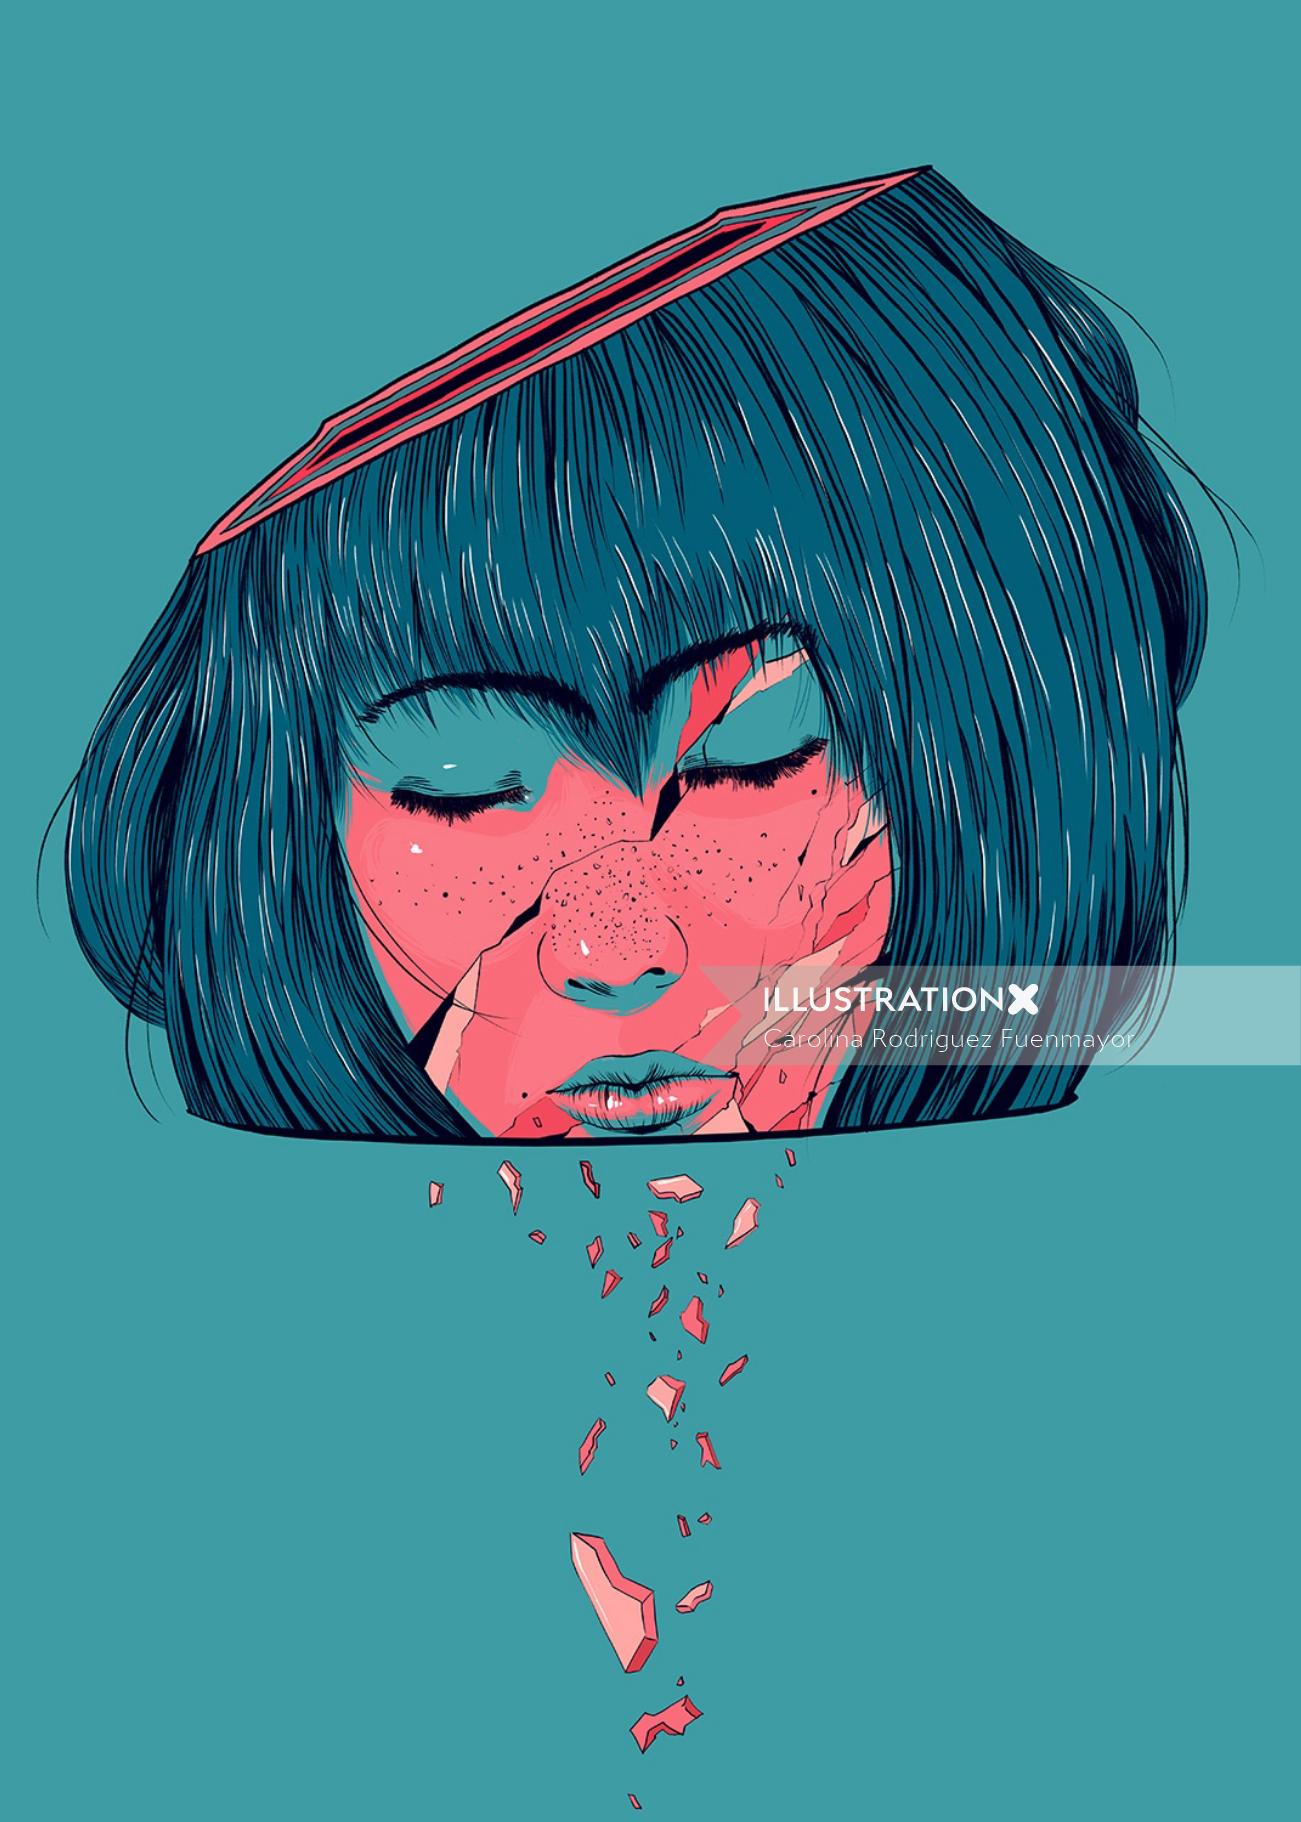 Crying girl illustration by Carolina Rodriguez Fuenmayor